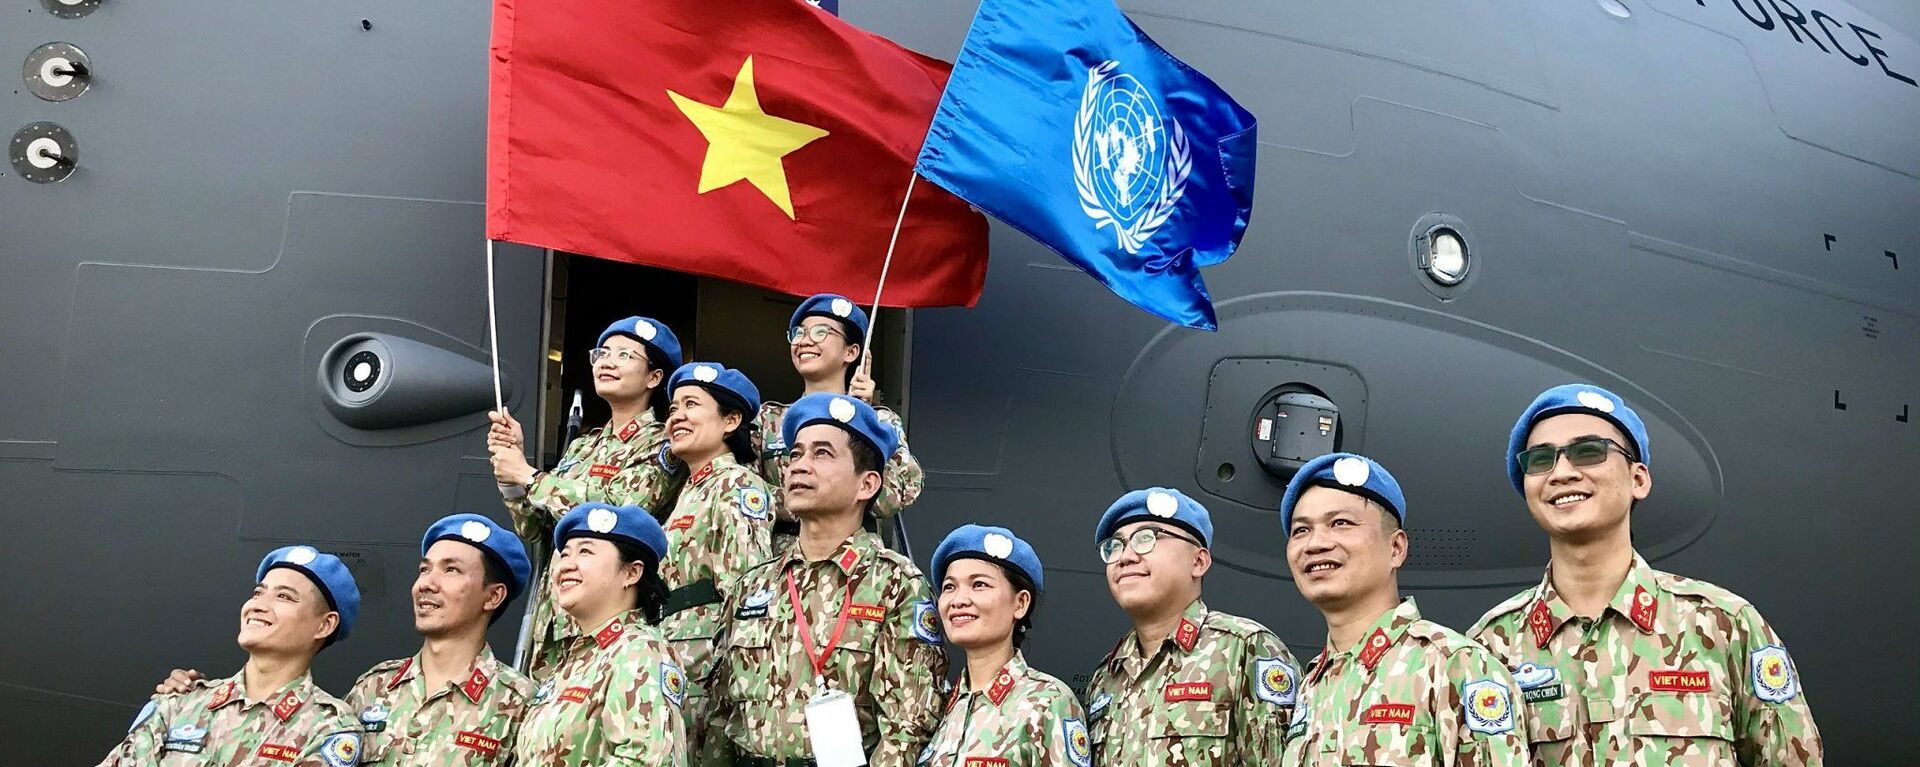 Gìn giữ hòa bình Liên hợp quốc: Điểm sáng của Việt Nam trong đối ngoại quốc phòng. - Sputnik Việt Nam, 1920, 22.02.2022